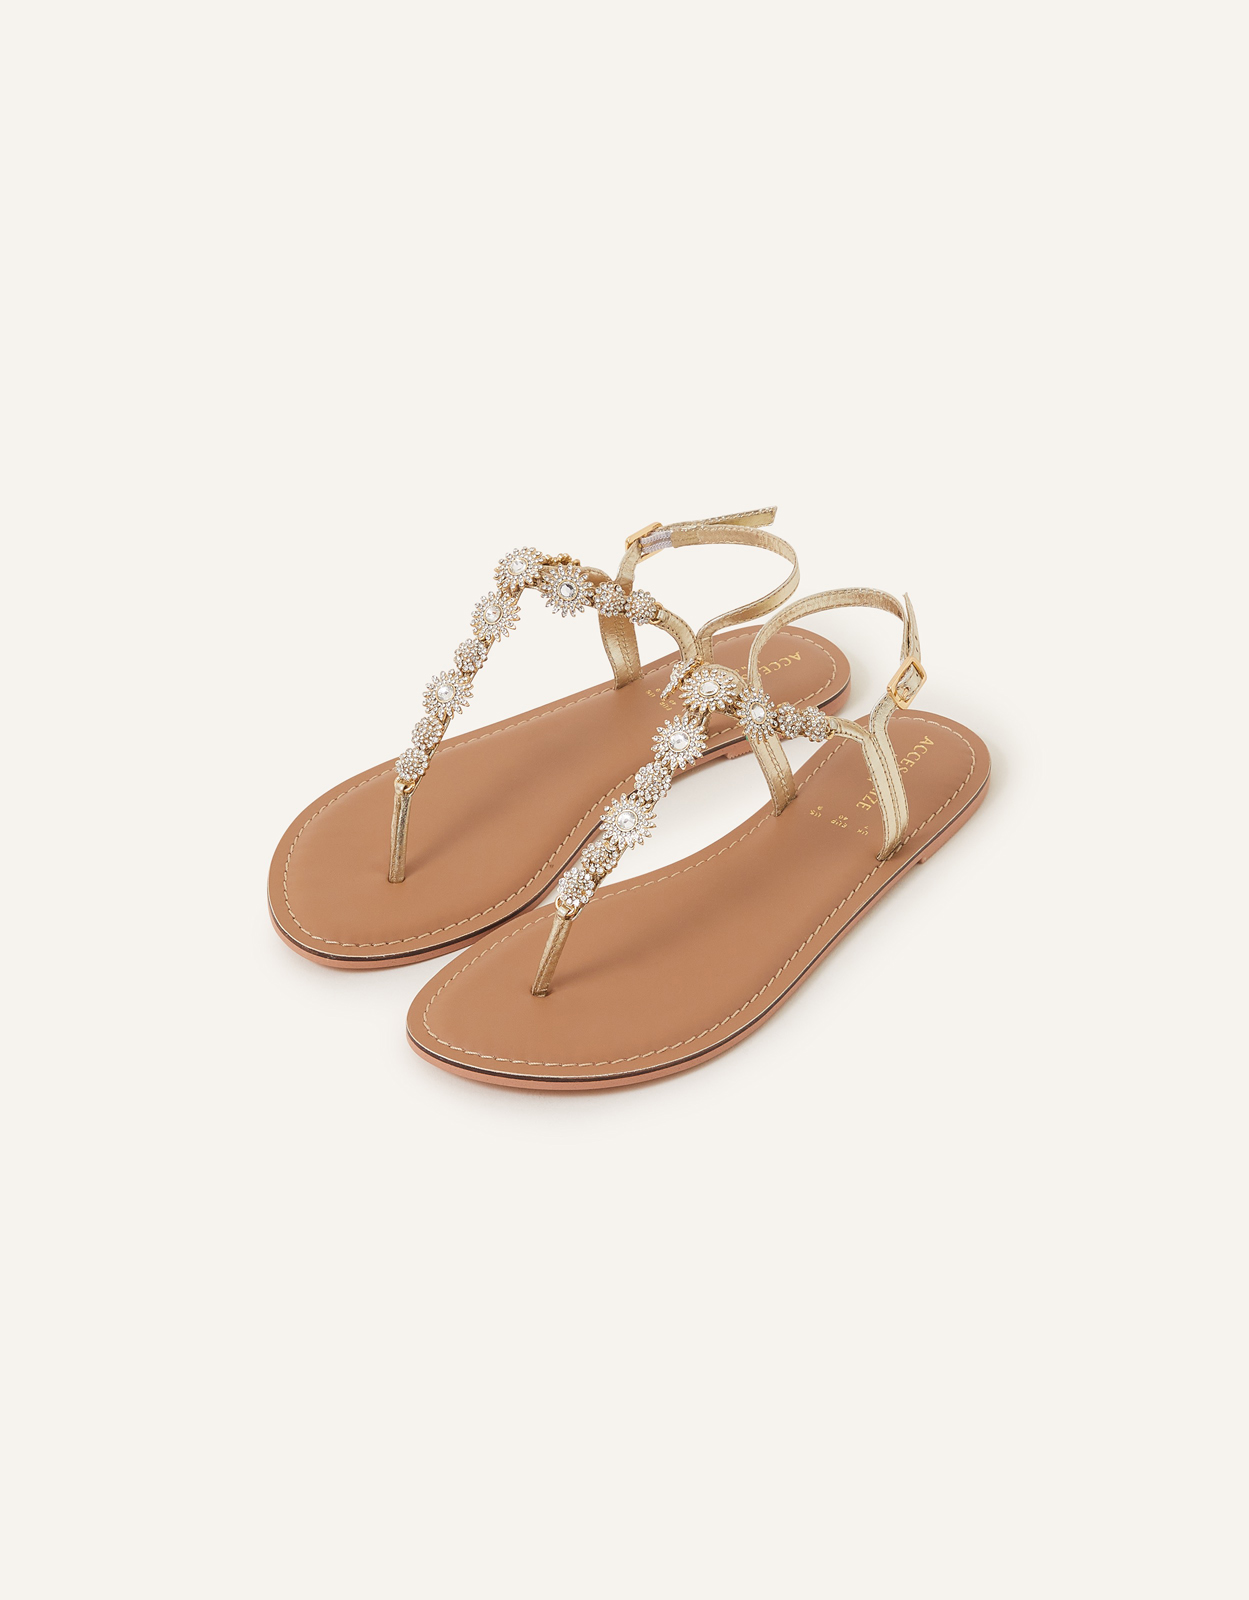 Accessorize Women's Rome Sparkle Sandals Gold, Size: 40